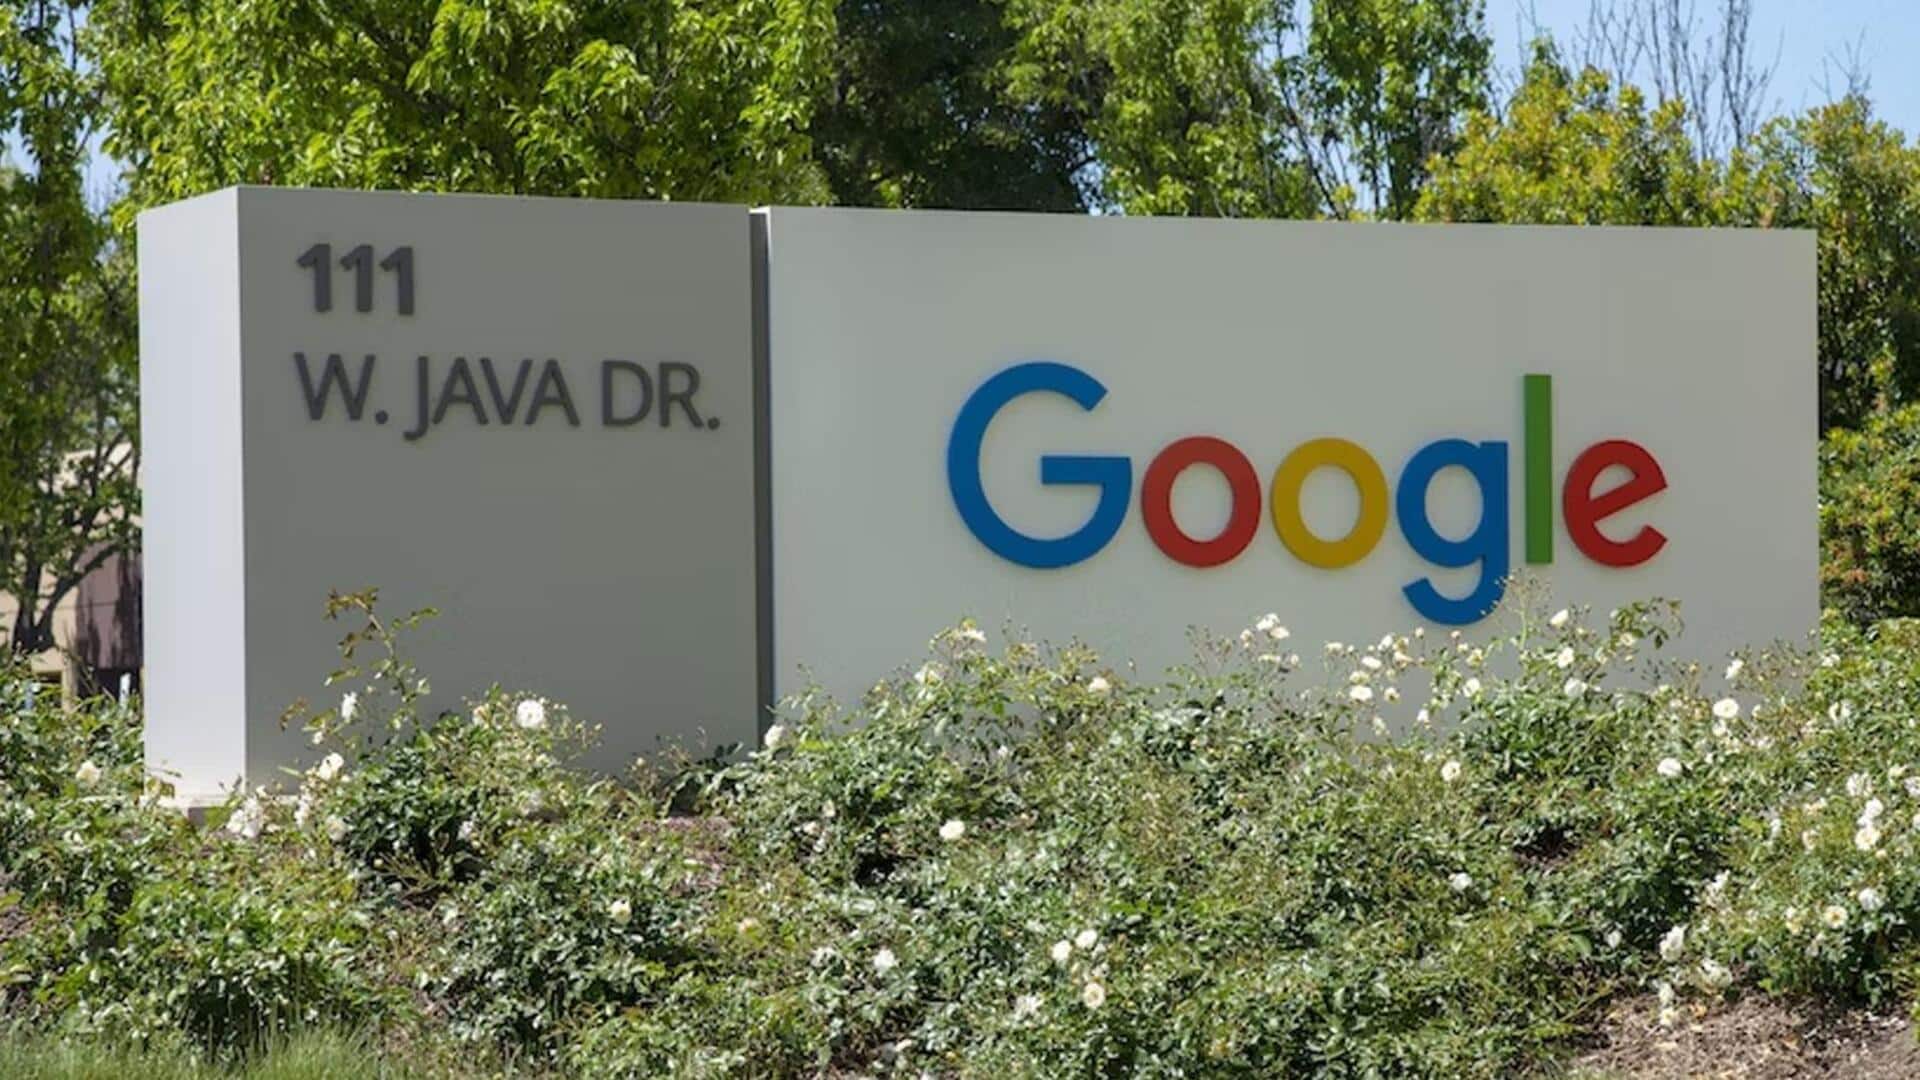 दक्षिण कोरिया ने गूगल पर लगाया 3.18 करोड़ डॉलर का जुर्माना, जानिए वजह